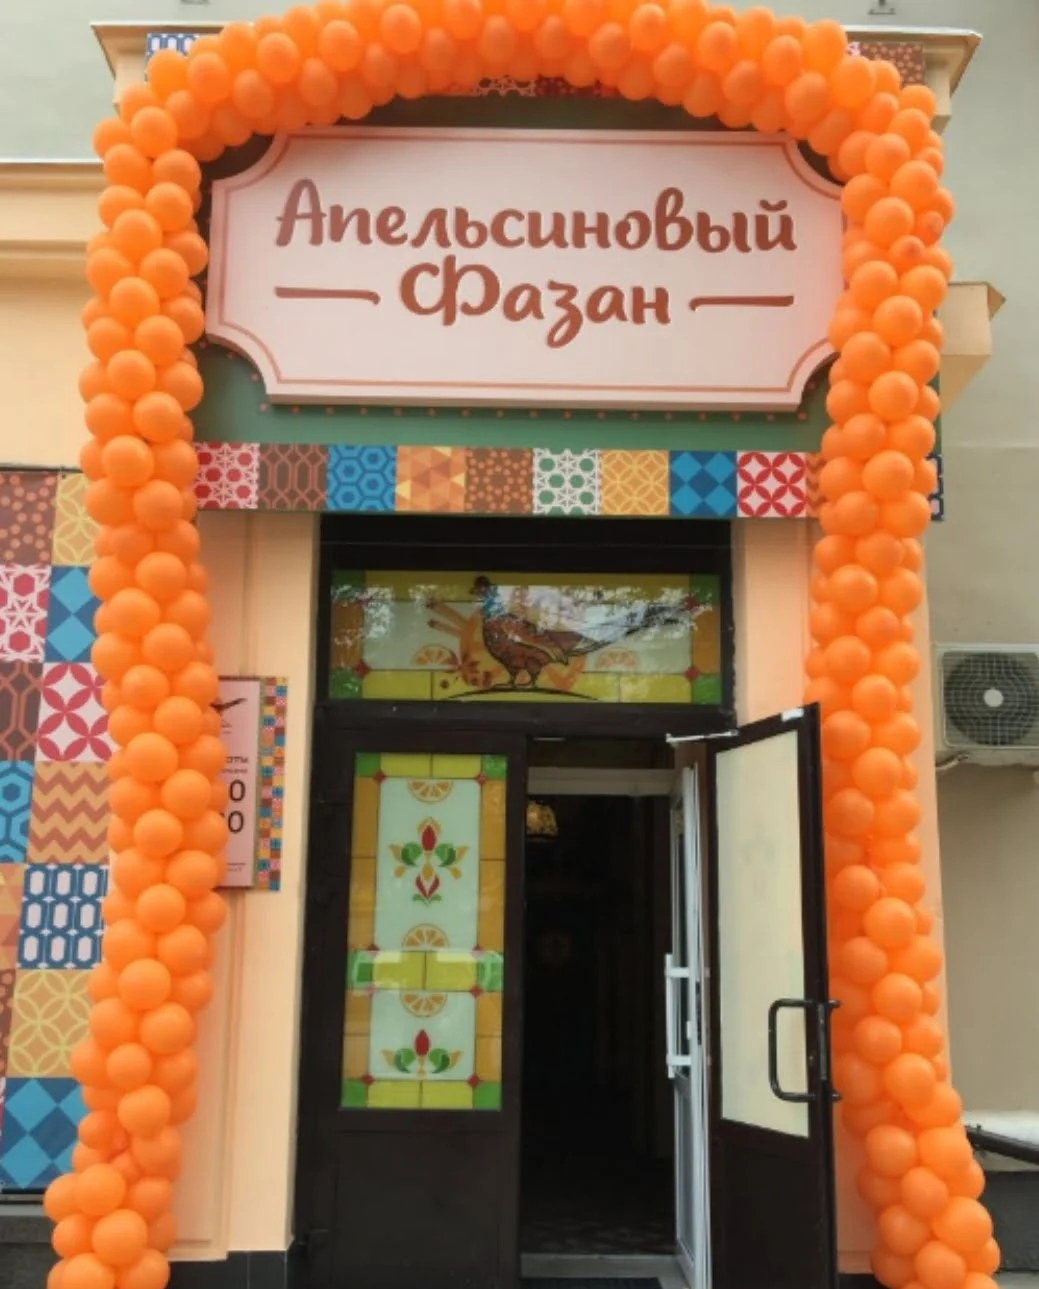 Вход в кафе-ресторан "Апельсиновый Фазан", по адресу ул. Гагарина, 18 (у перекрестка с улицей Ленина). Во всех отношениях вкусное место!